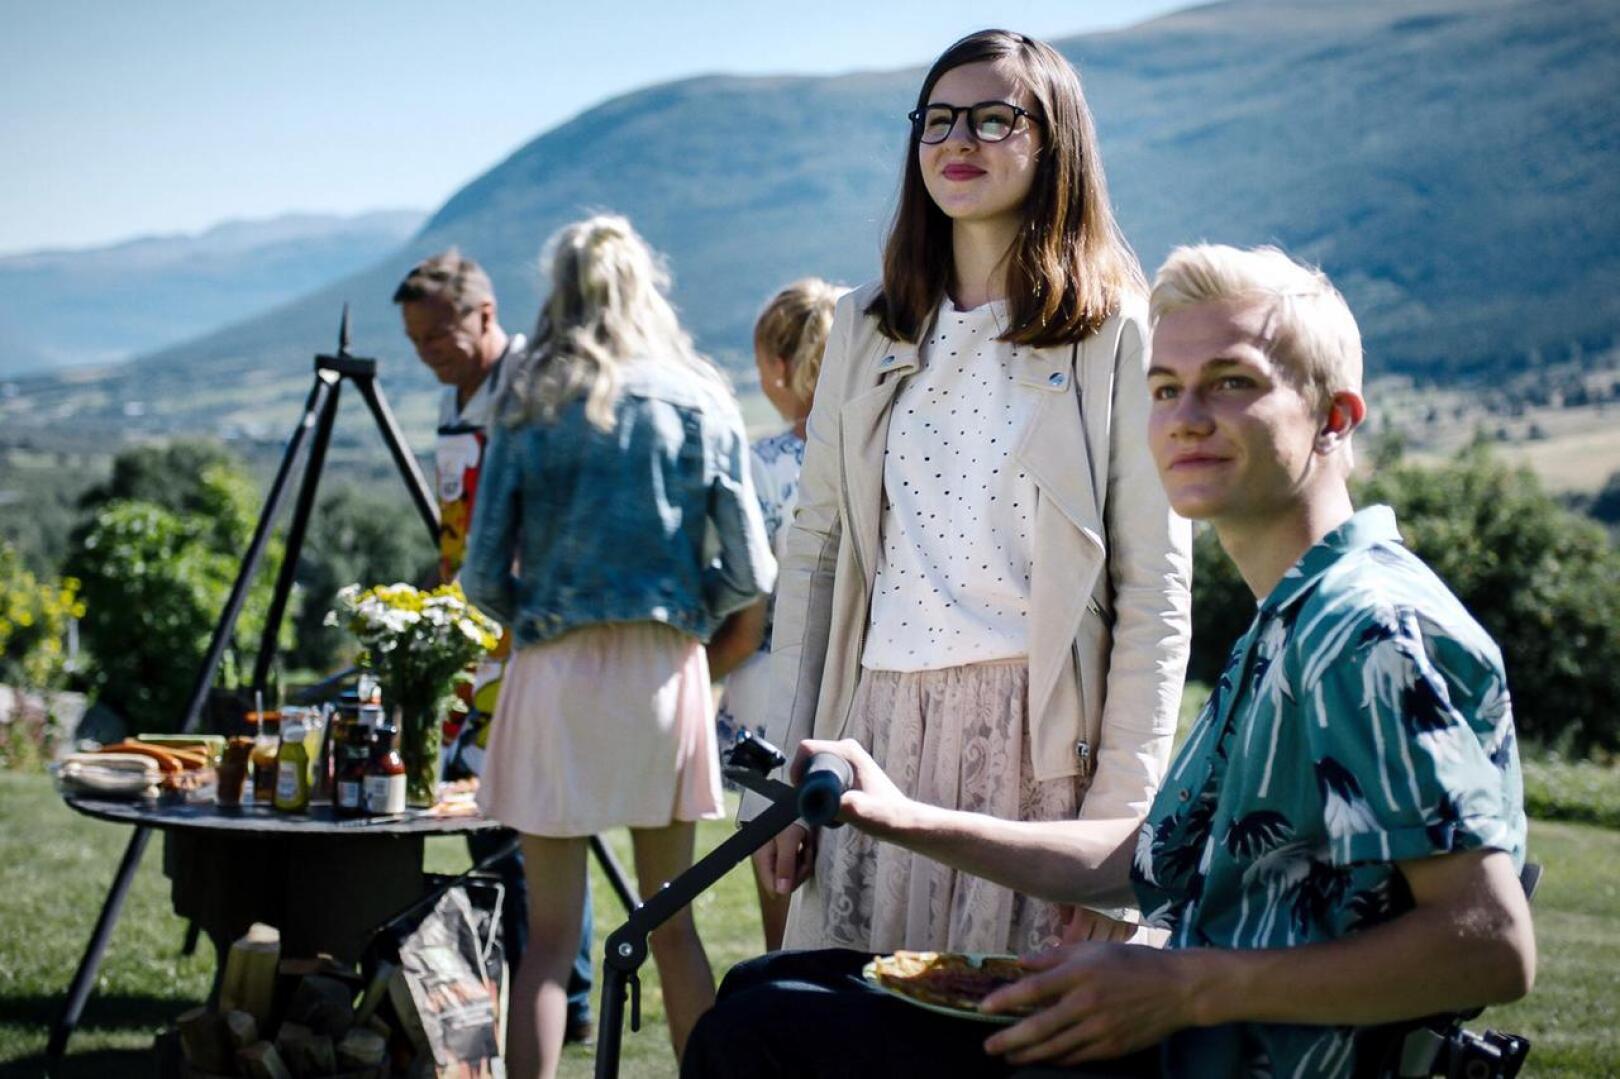 Skjåk maailmankartalle! Norjalaissarjasta tehty elokuva jatkaa liikuntarajoitteisen Larsin ja ystävänsä Emman tutkimuksia.